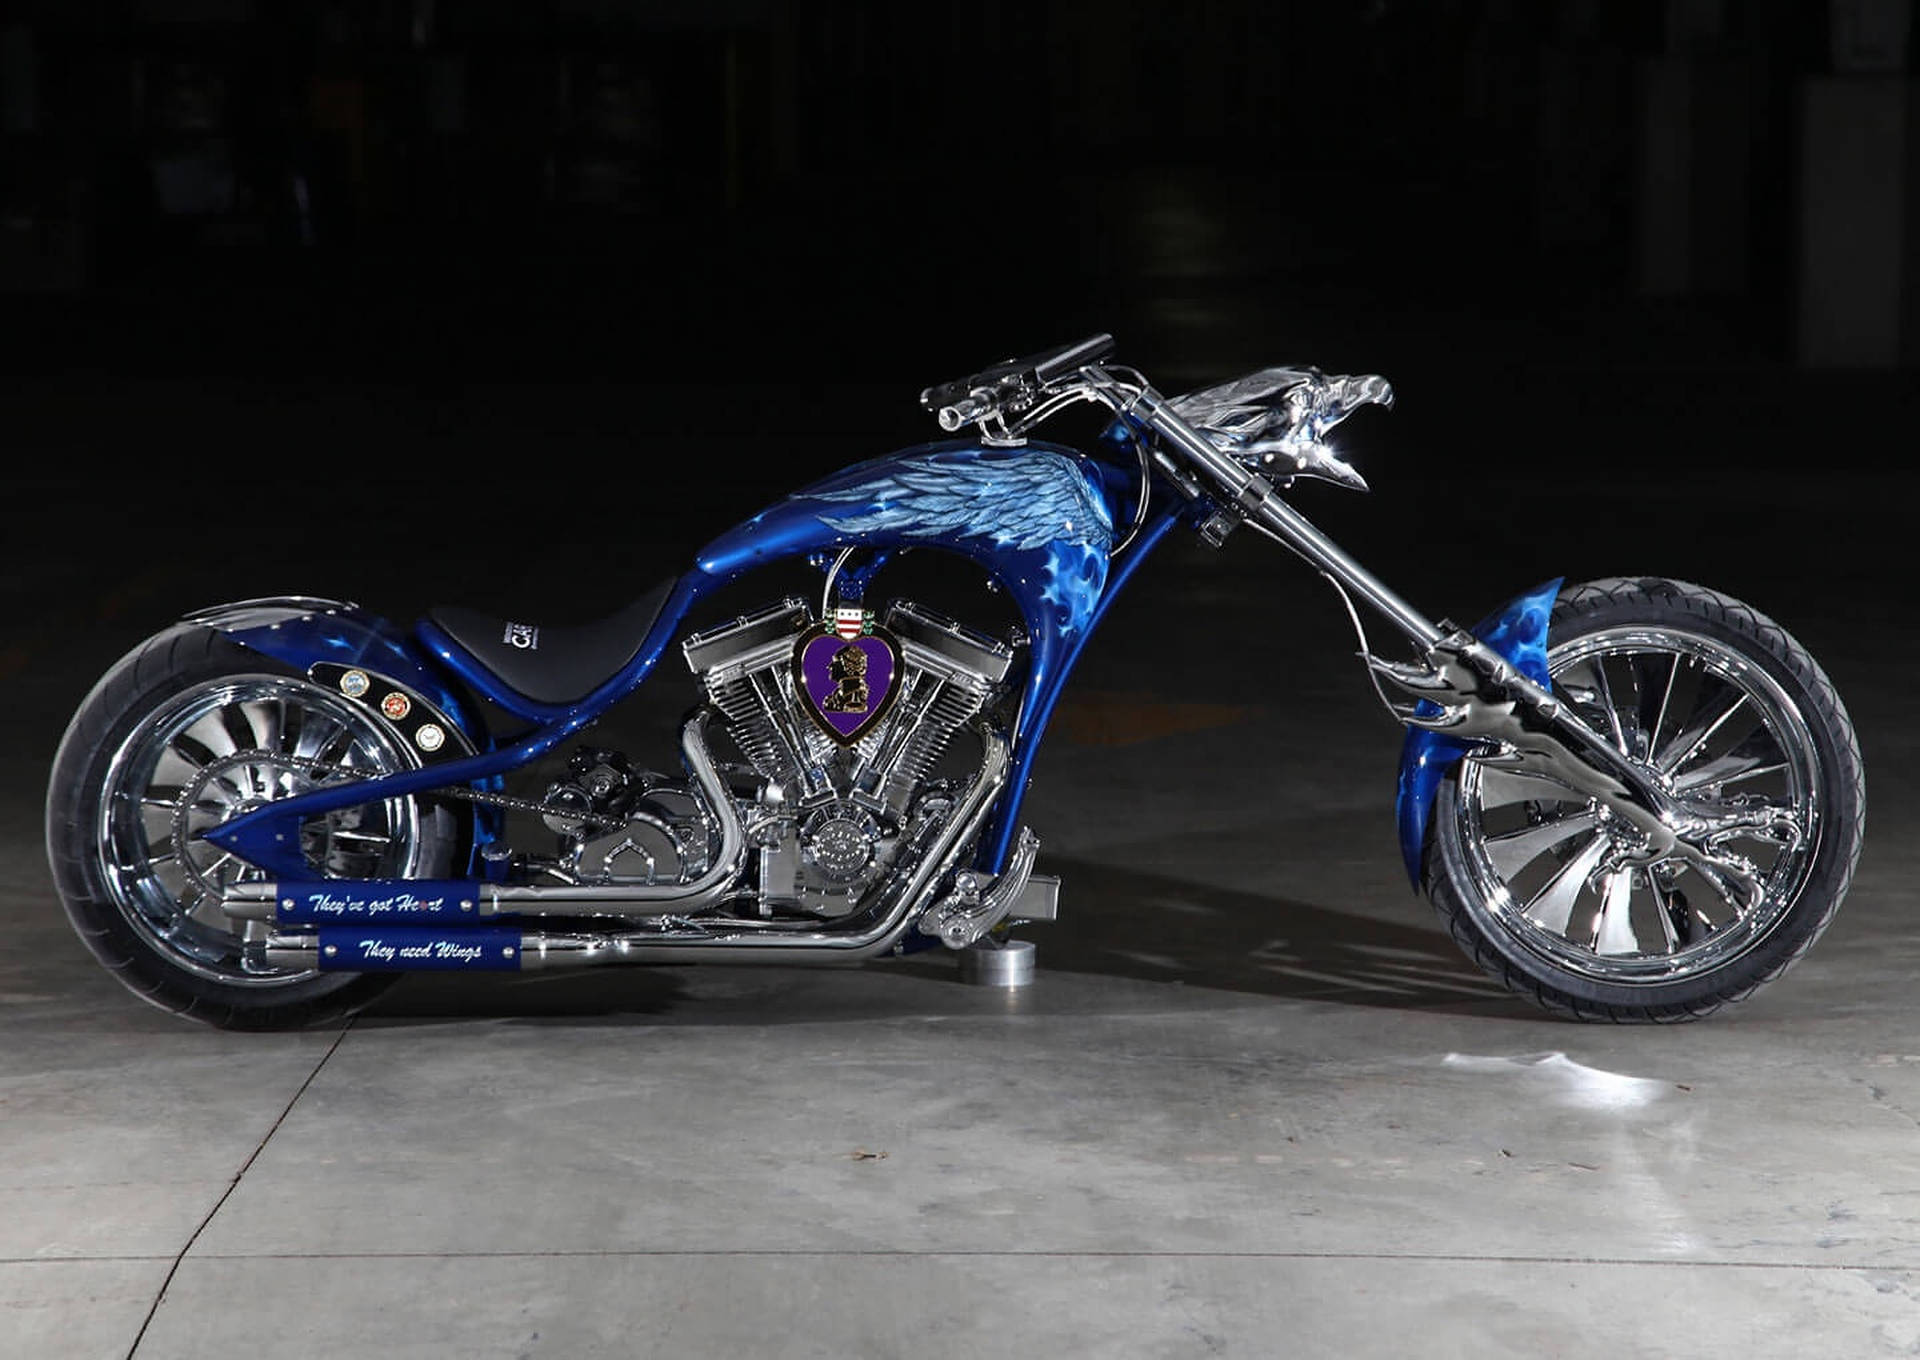 Motocicletachopper Azul Y Plateada Fondo de pantalla